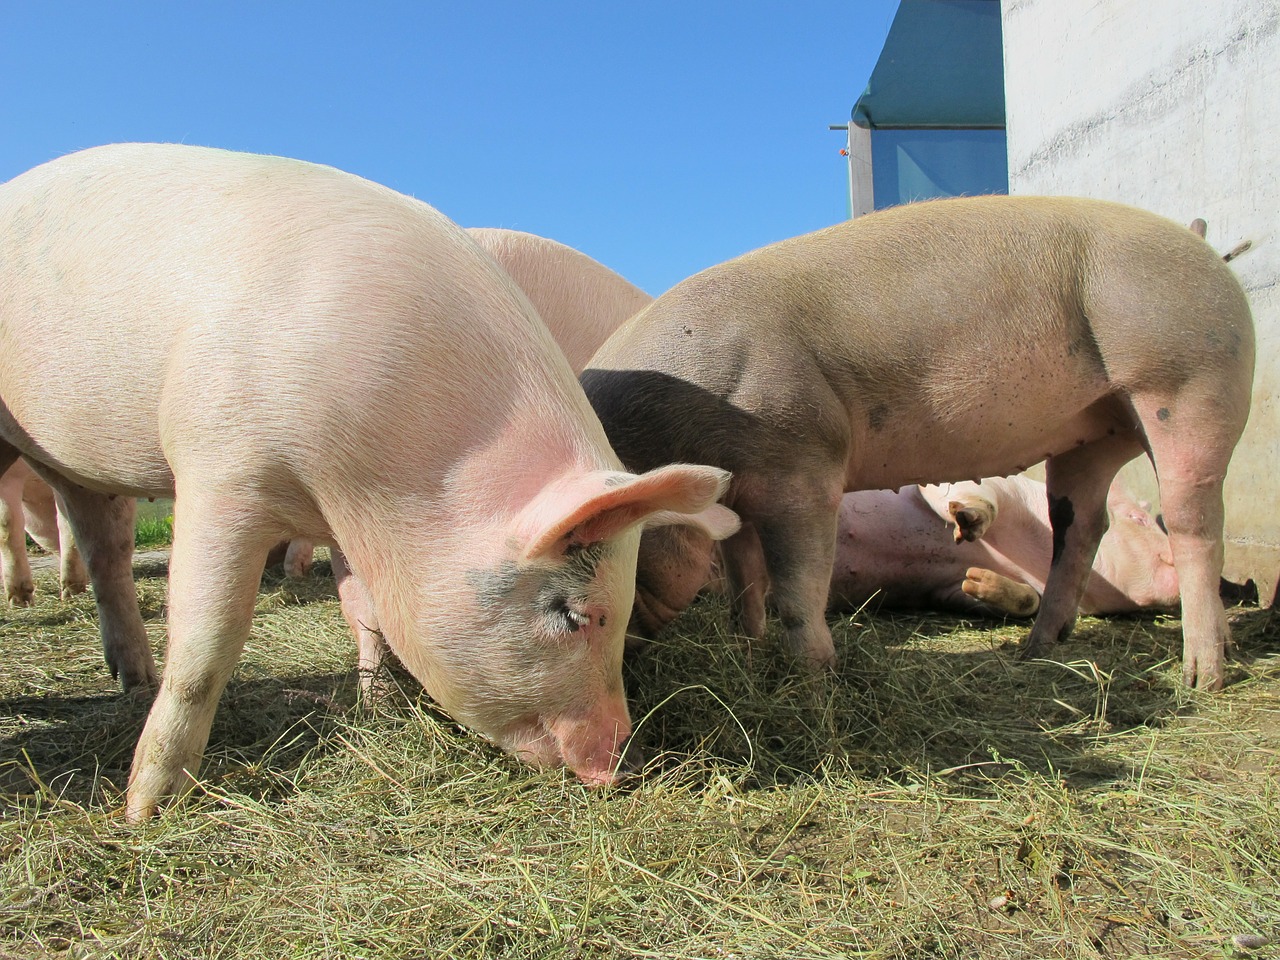 Pesta porcină face ravagii în România: 600 de focare active și peste jumătate de milion de animale sacrificate